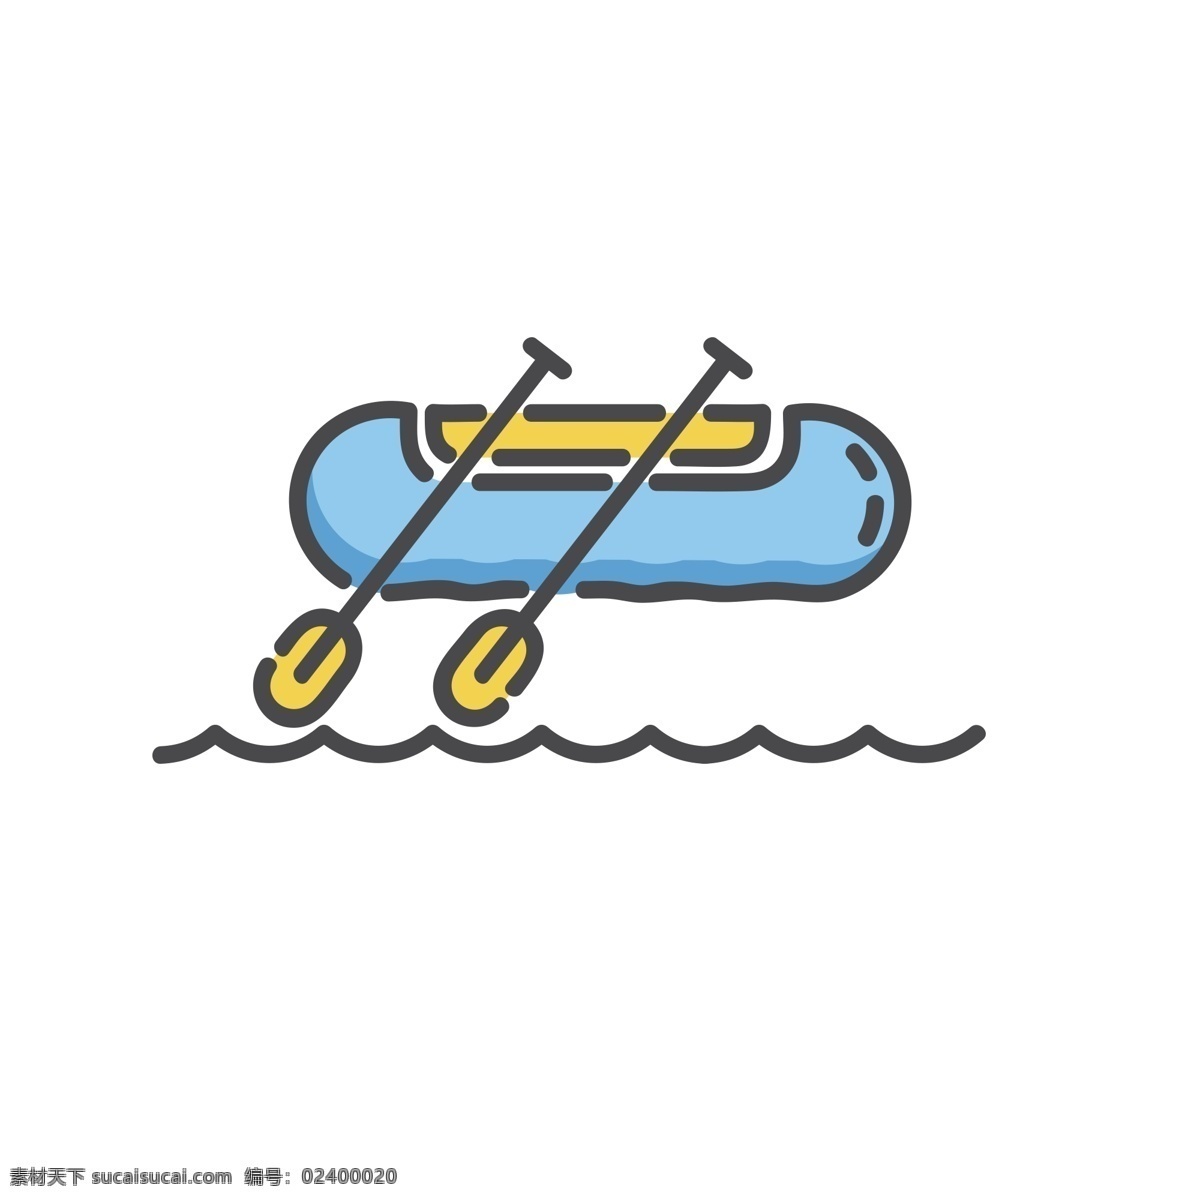 卡通皮划艇 皮划艇 水上运动 扁平化ui ui图标 手机图标 界面ui 网页ui h5图标